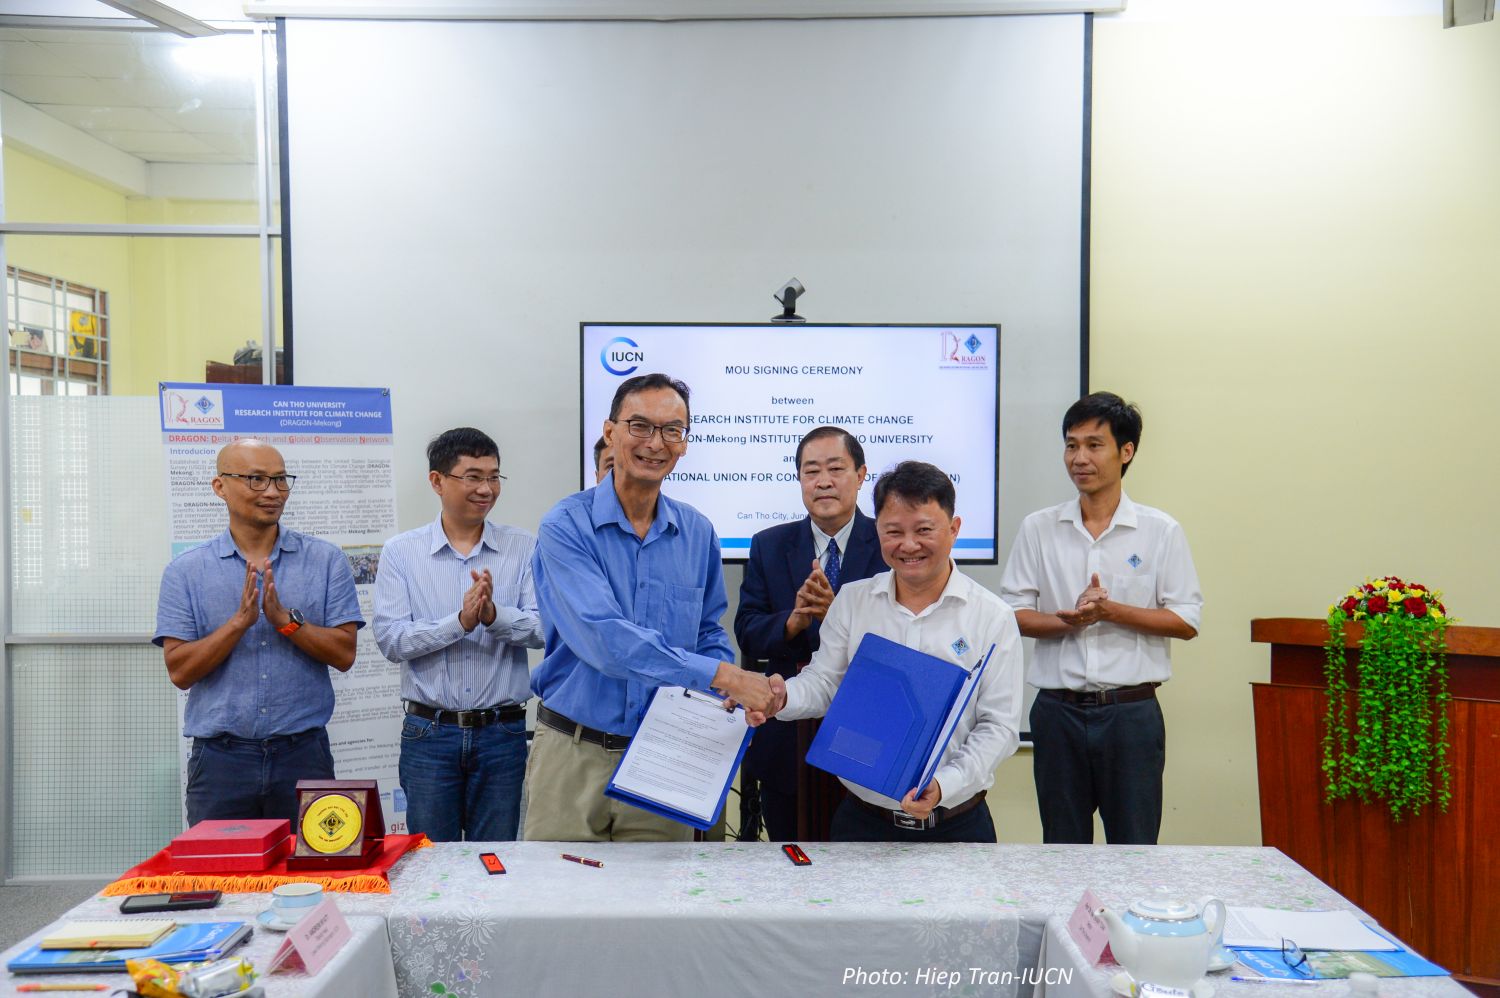 Dr. Andrew Wyatt and Prof. Van Pham Dang Tri signed MOU 